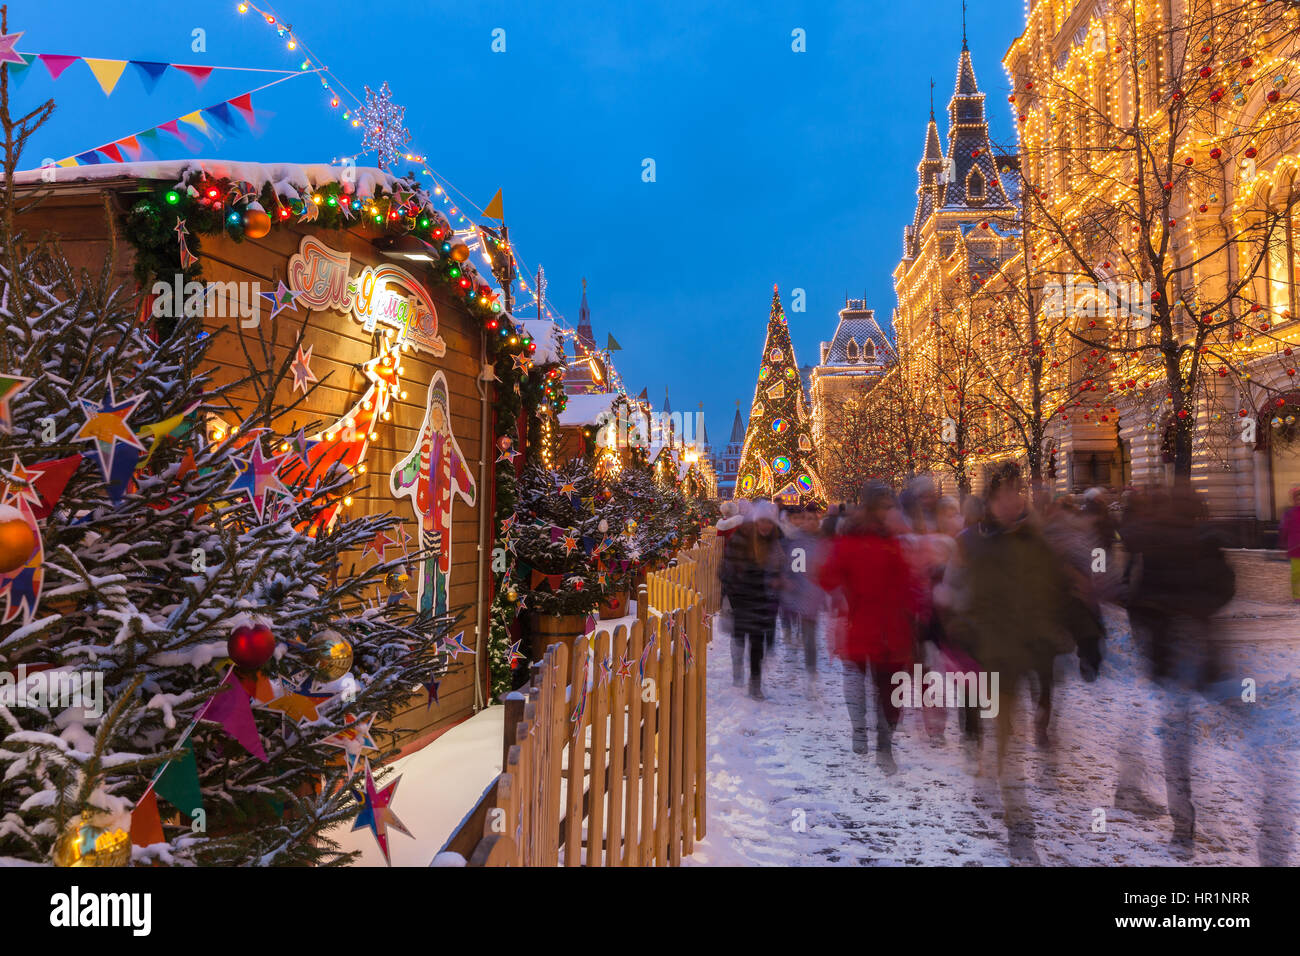 Moskau, Russland - 8. Dezember 2016: Dämmerung Blick auf den Weihnachtsbaum und Weihnachten Markt auf dem Roten Platz am Dezember 08,2016 in Moskau, Russland Stockfoto